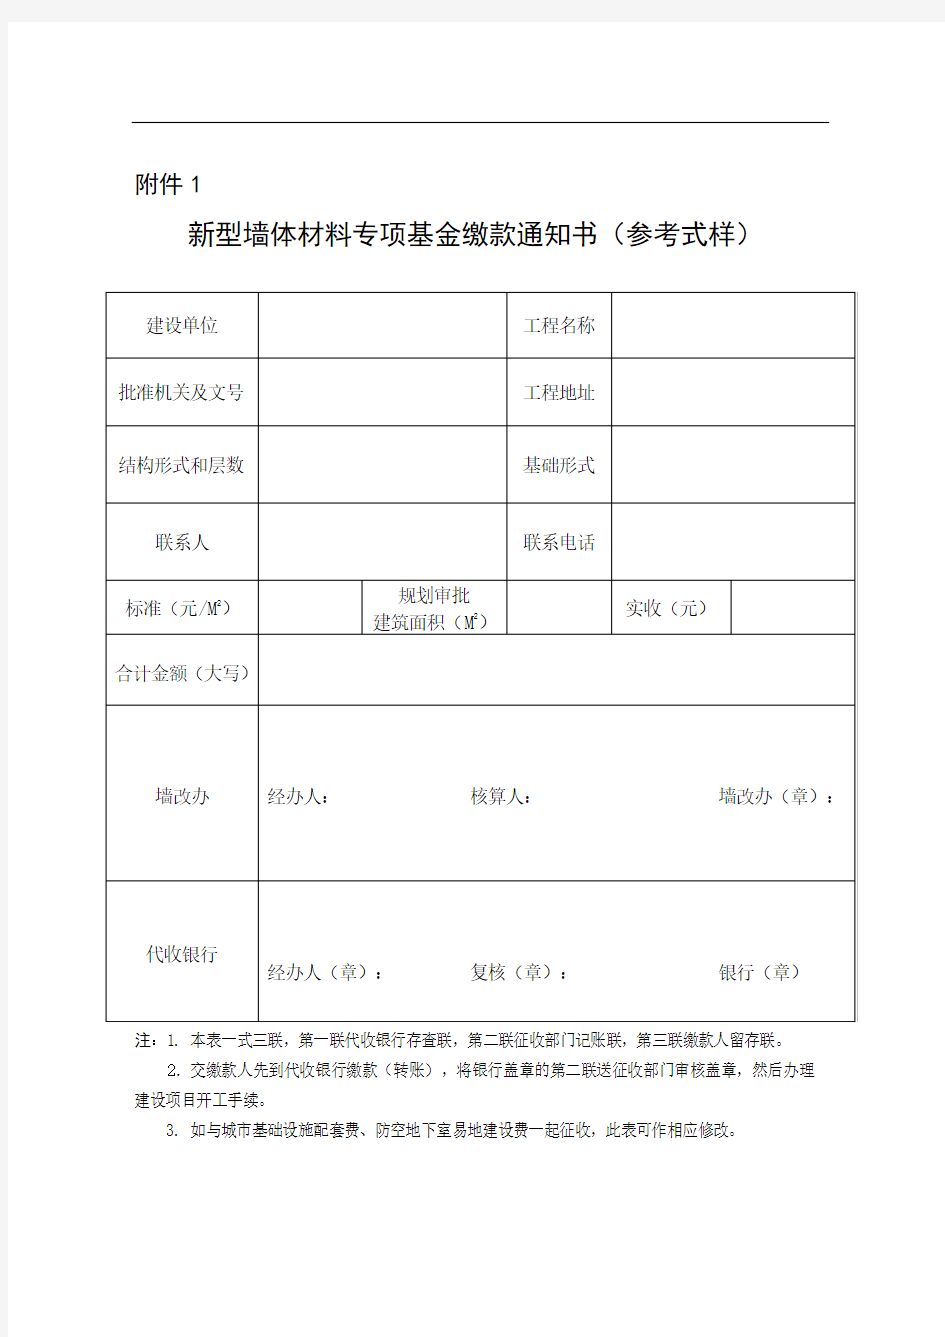 河南省新型墙体材料专项资金申请及补贴比例